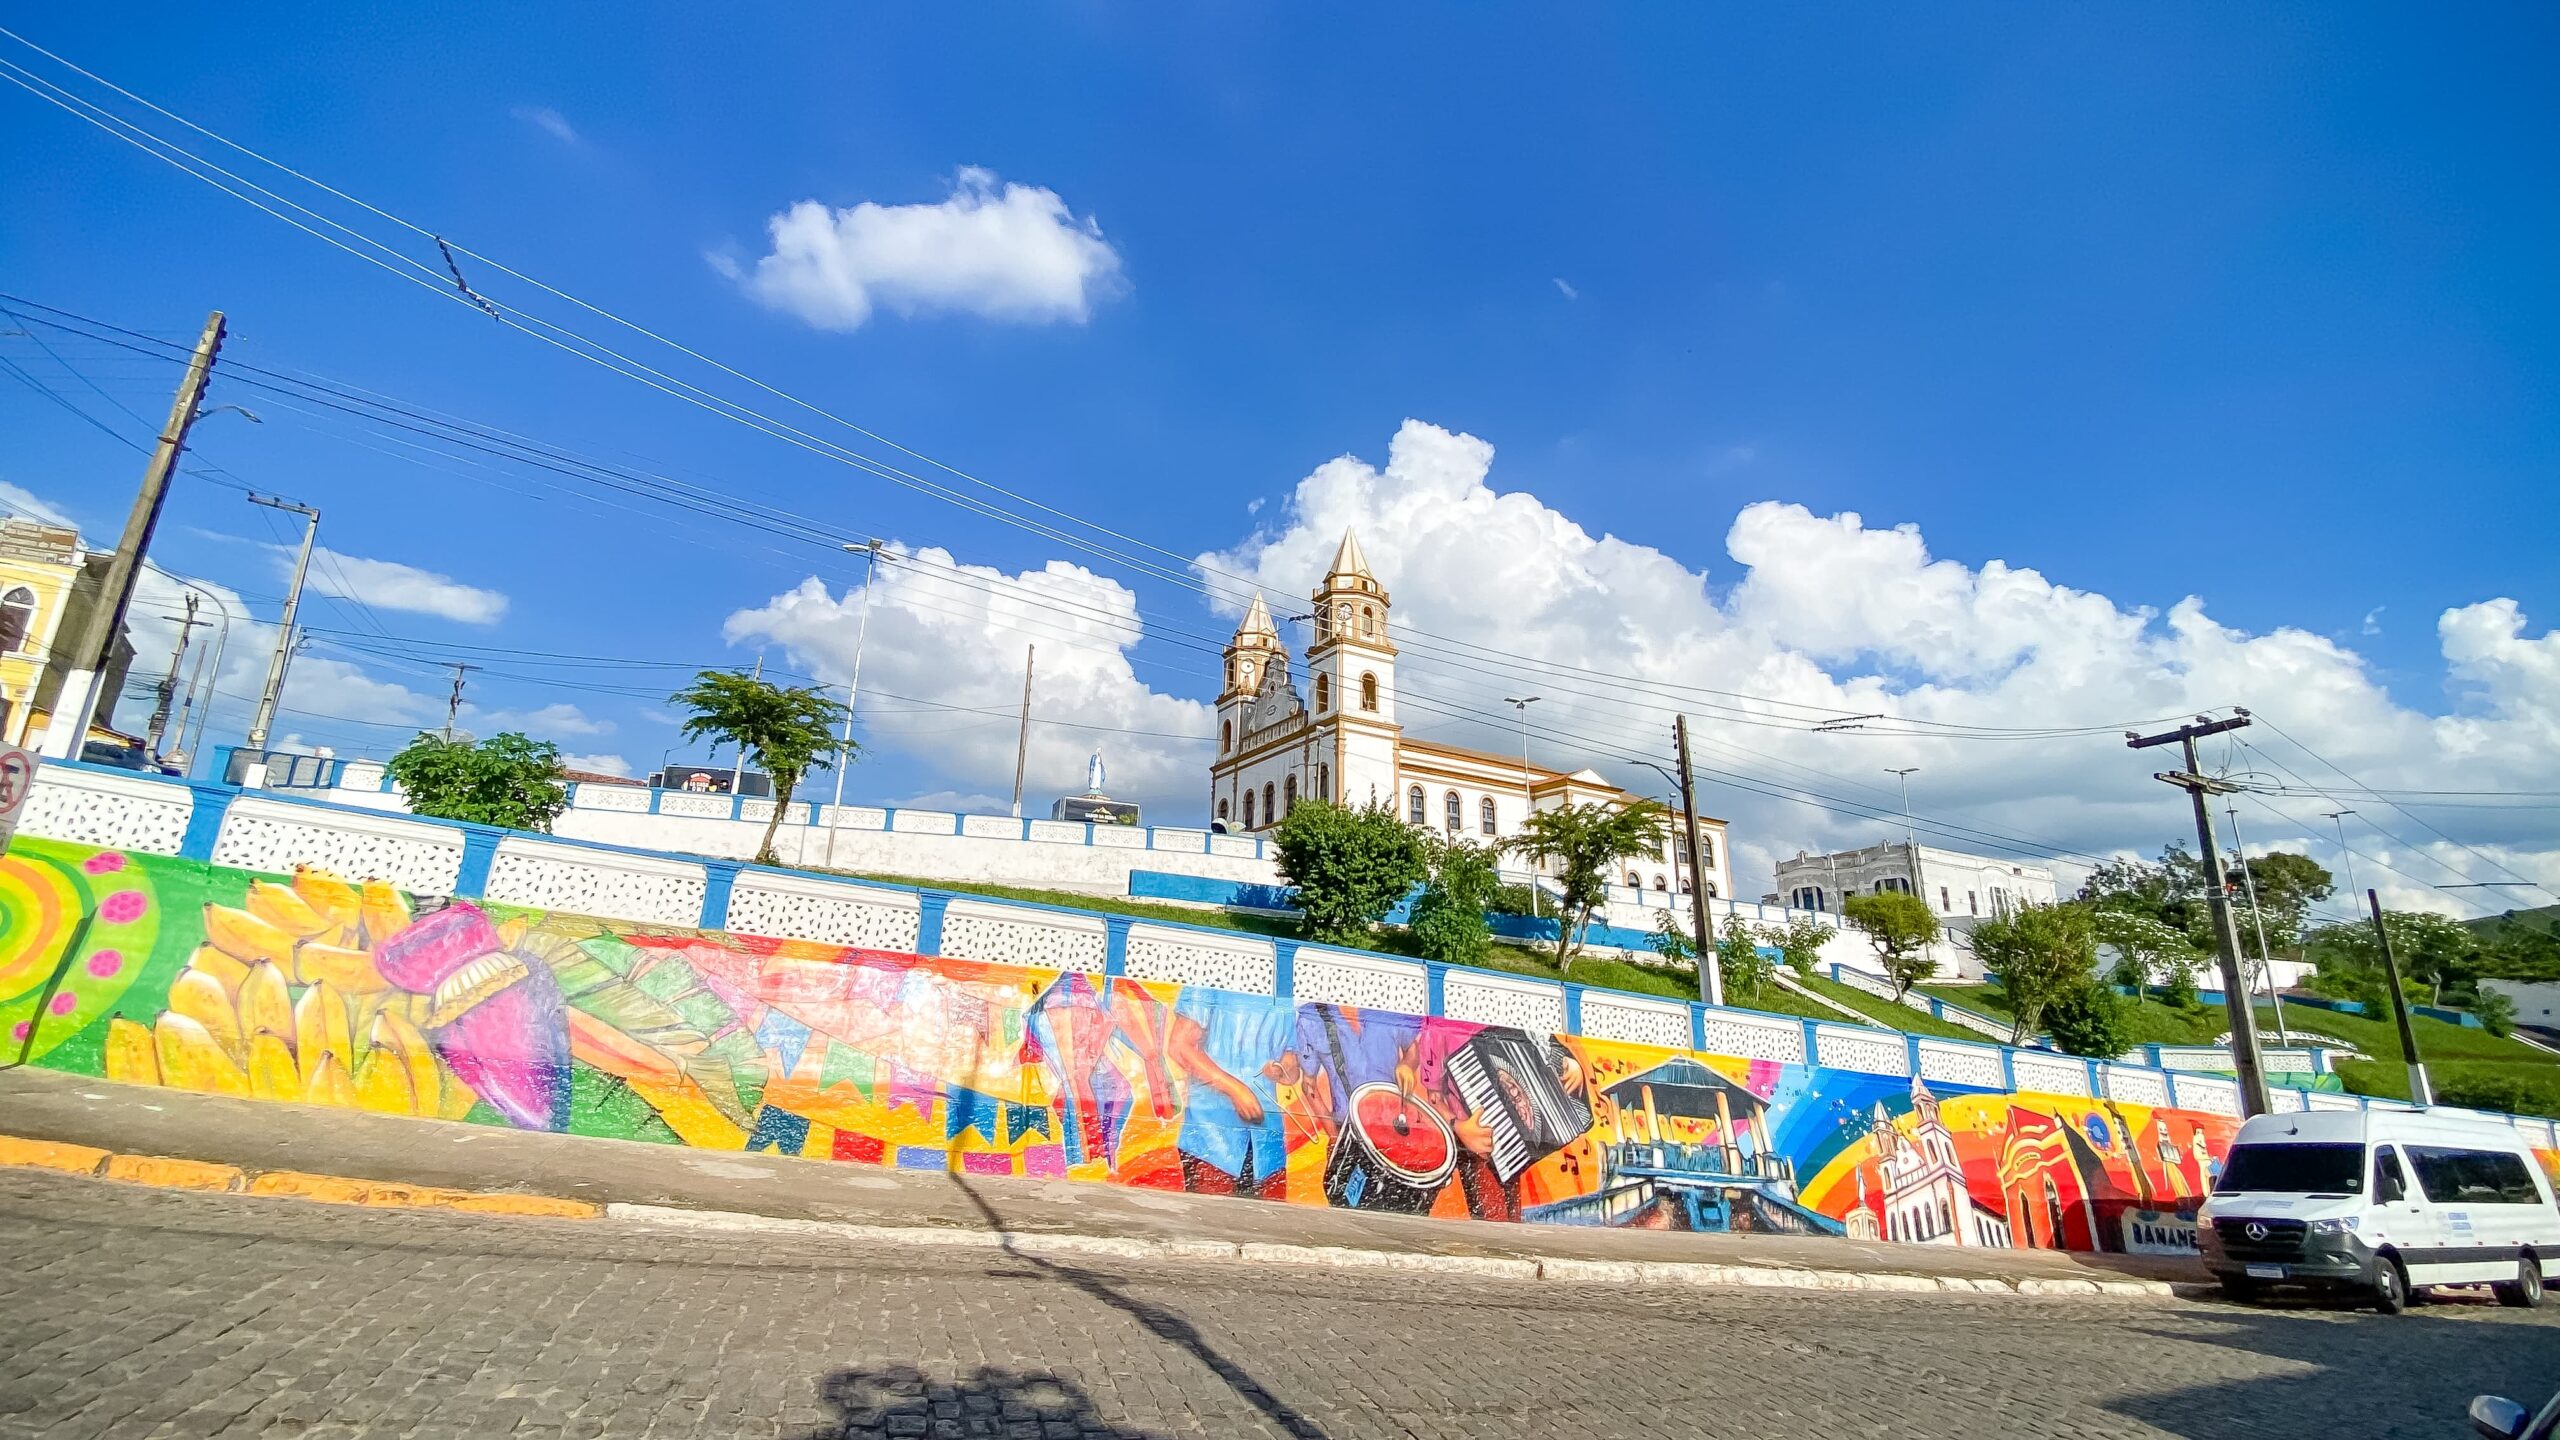 Bananeiras inaugura mural instagramável assinado pelo renomado Wilis Graffiti